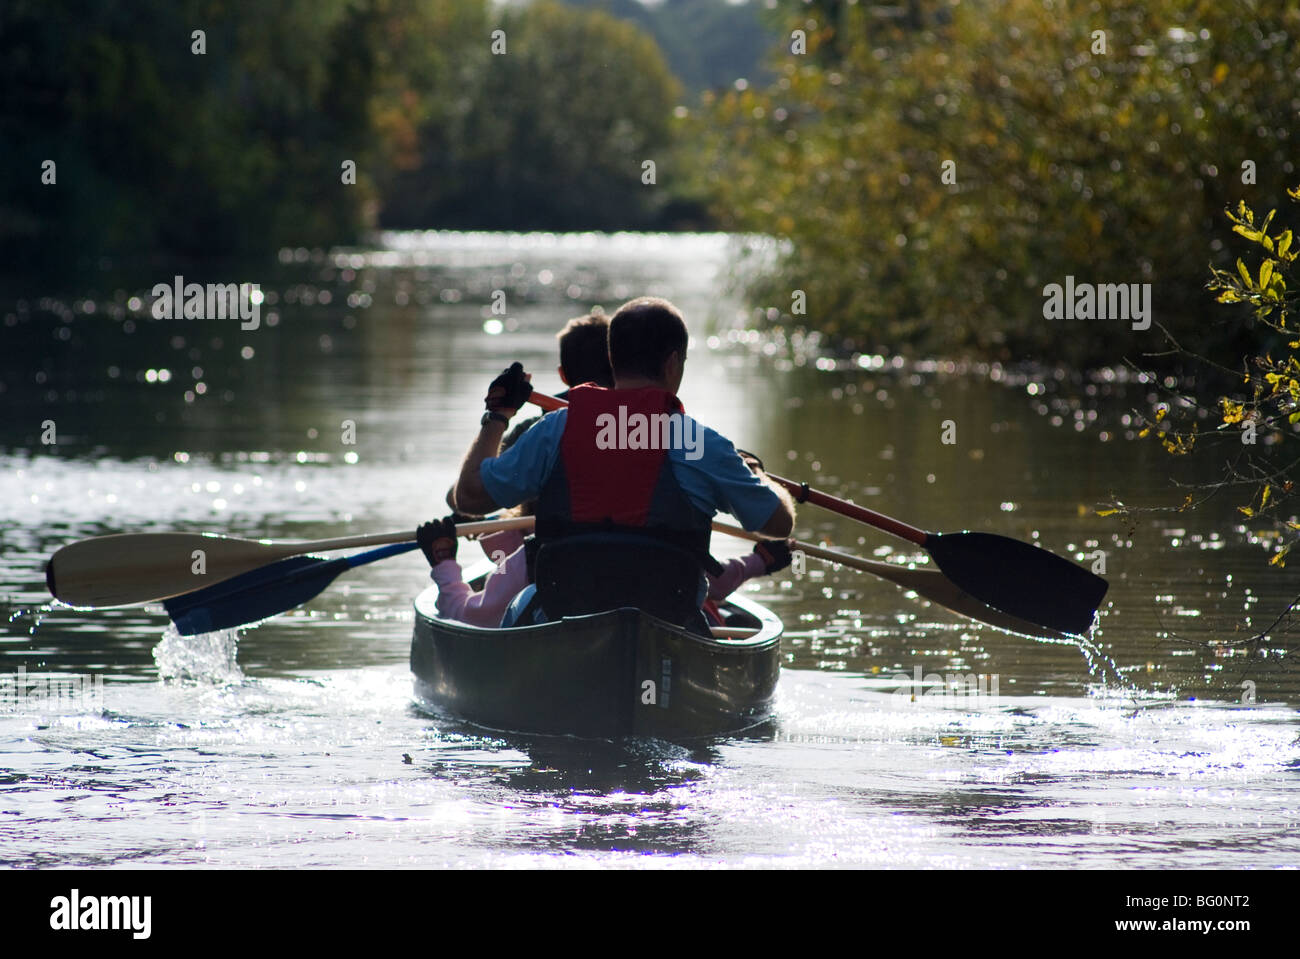 Canadian canoe kayak en famille sur la rivière waveney près de beccles suffolk angleterre Banque D'Images